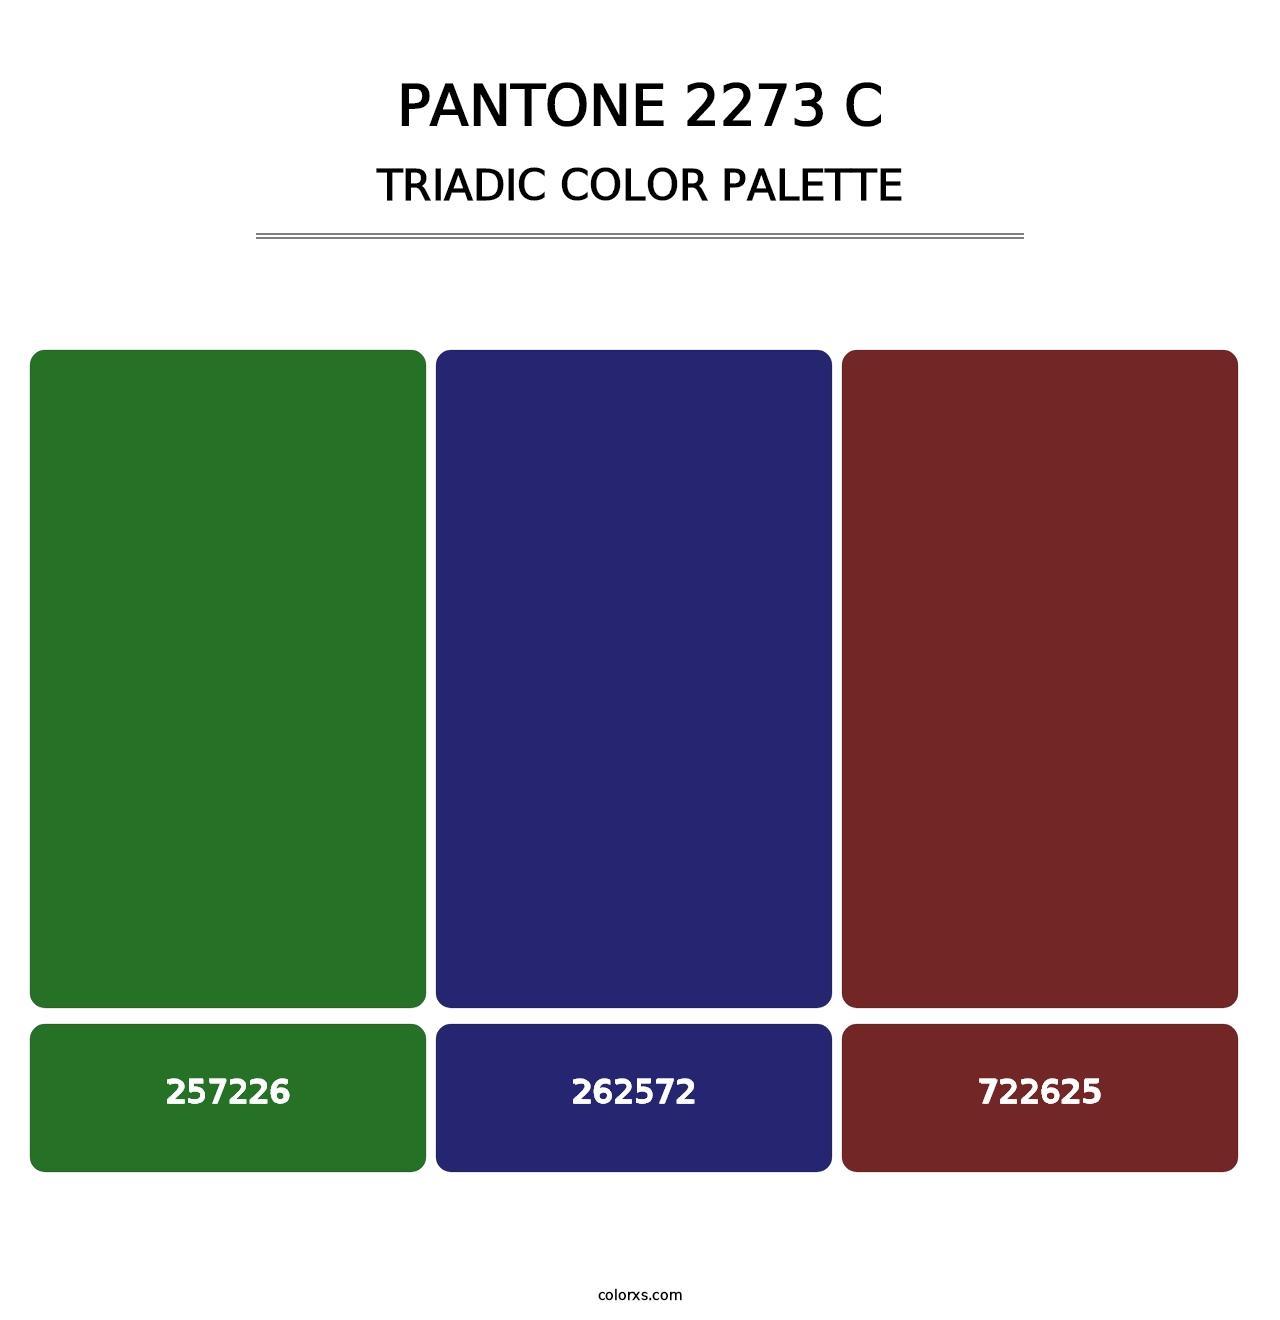 PANTONE 2273 C - Triadic Color Palette